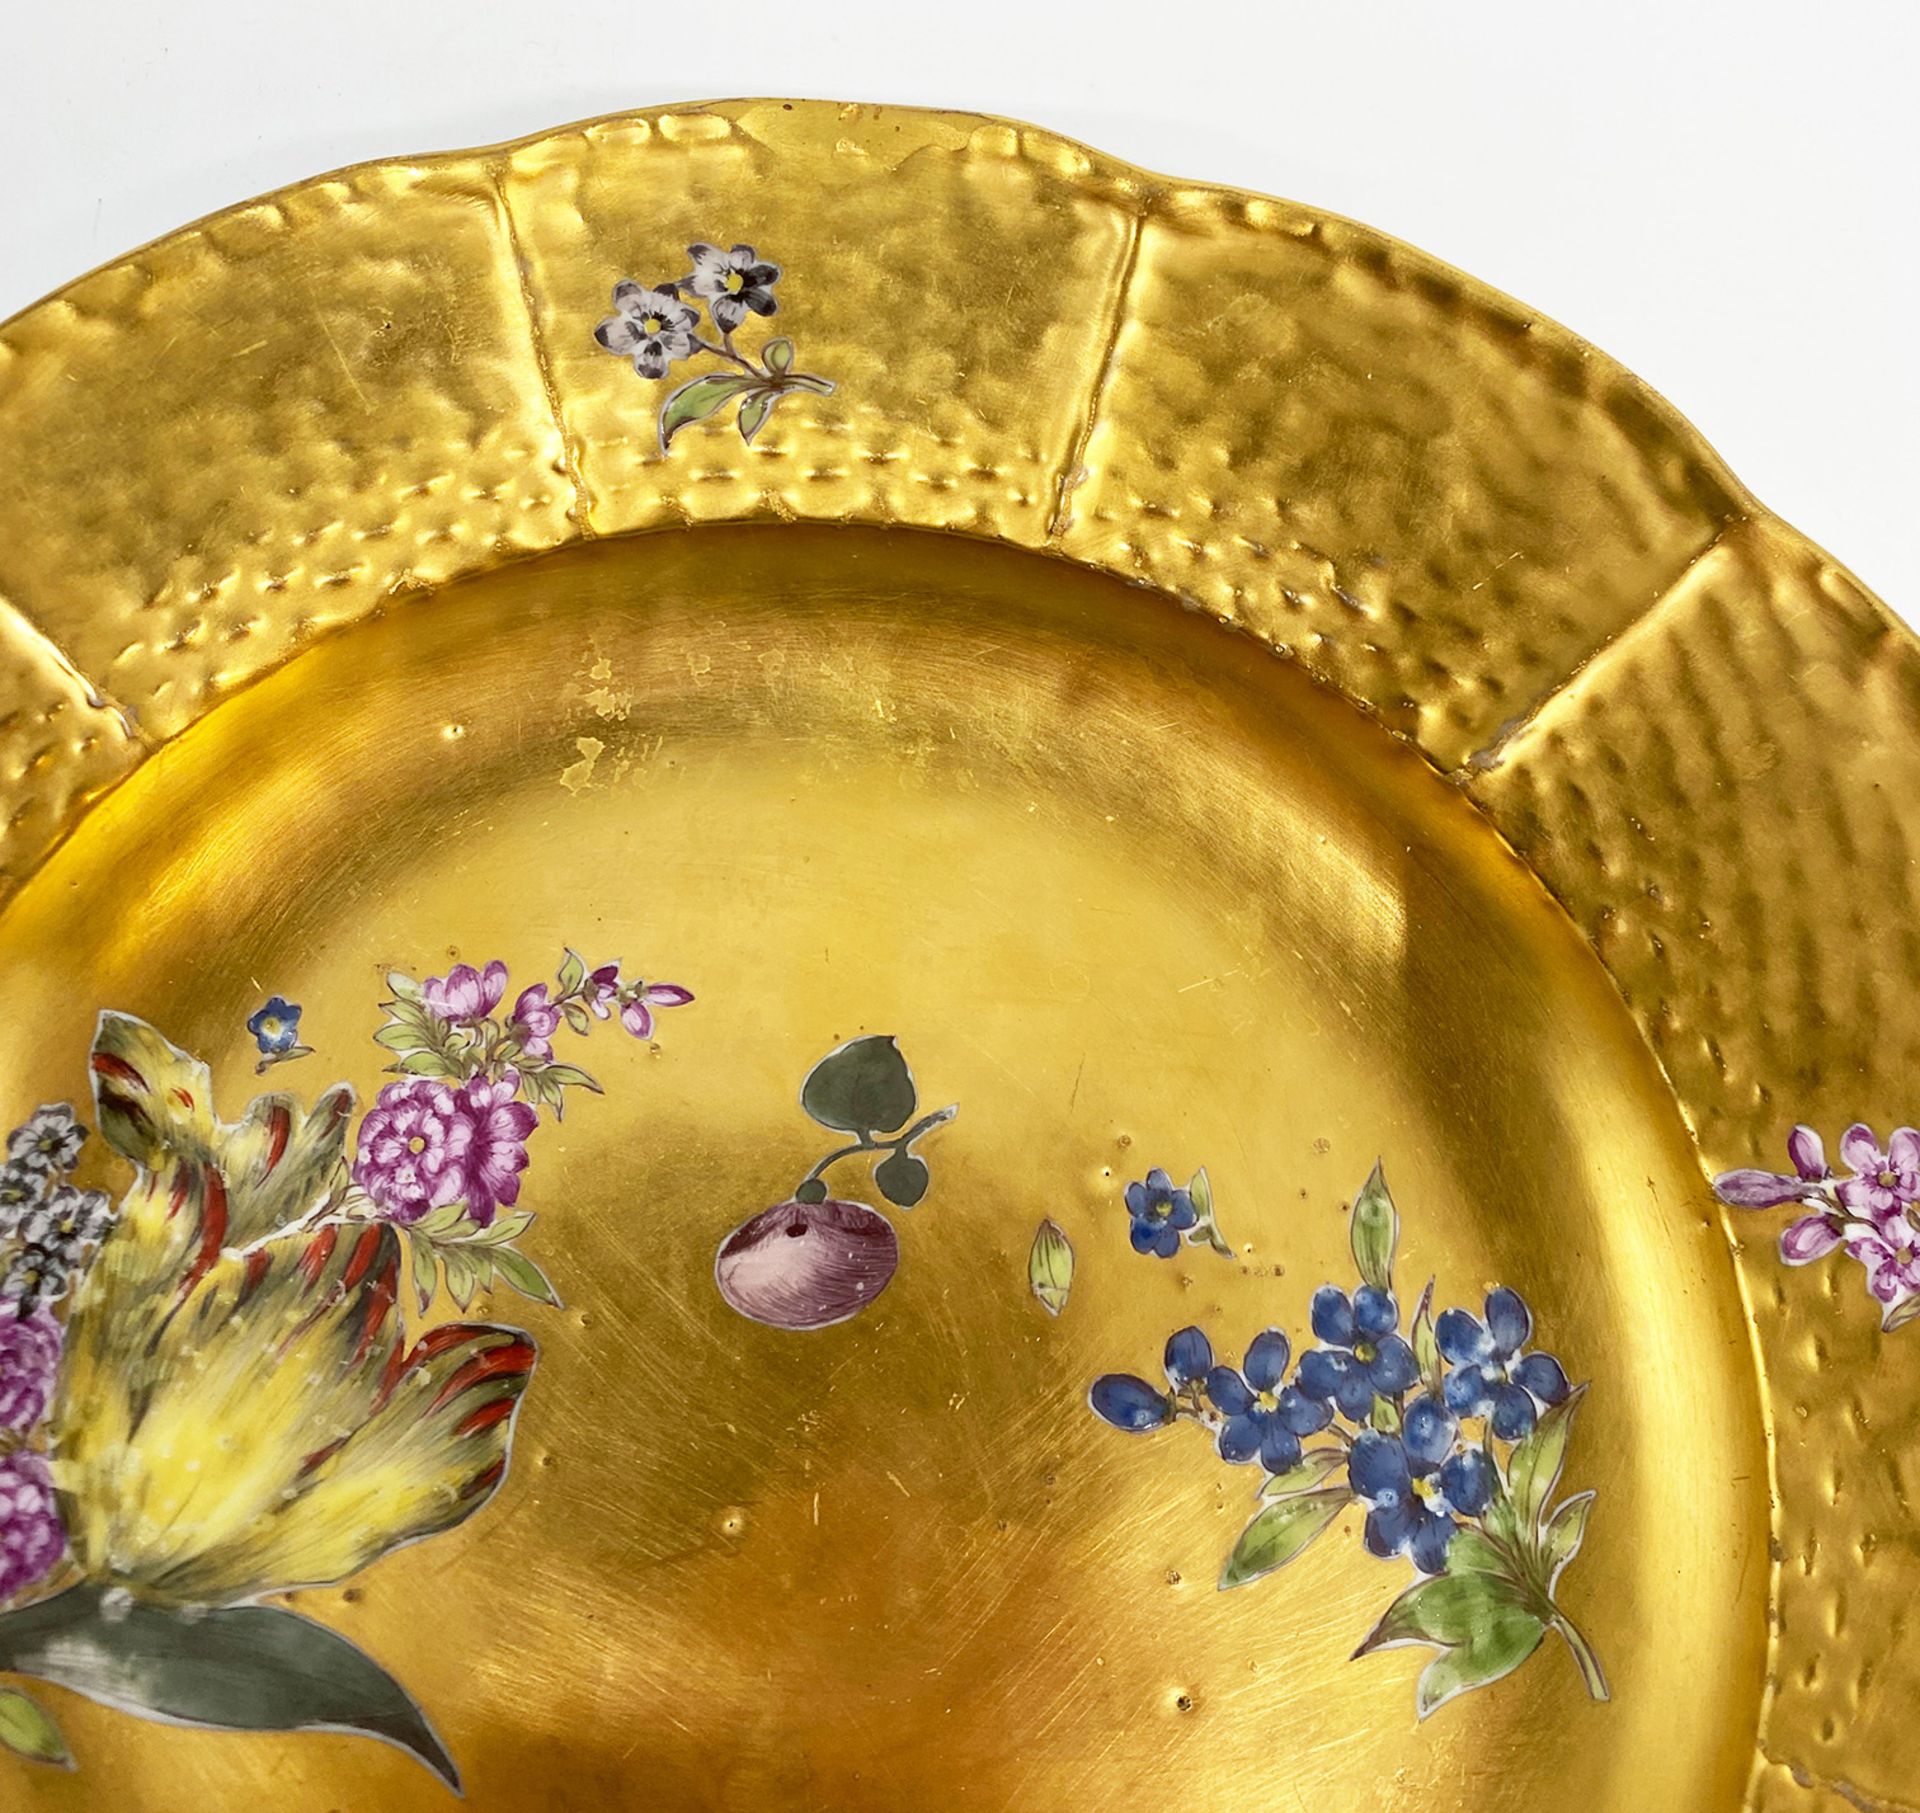 Meissen, Teller mit Goldfond und bunten Blumen, Mitte 18. Jh., Schwertermarke Meißen, D 22,5 cm, - Image 4 of 5